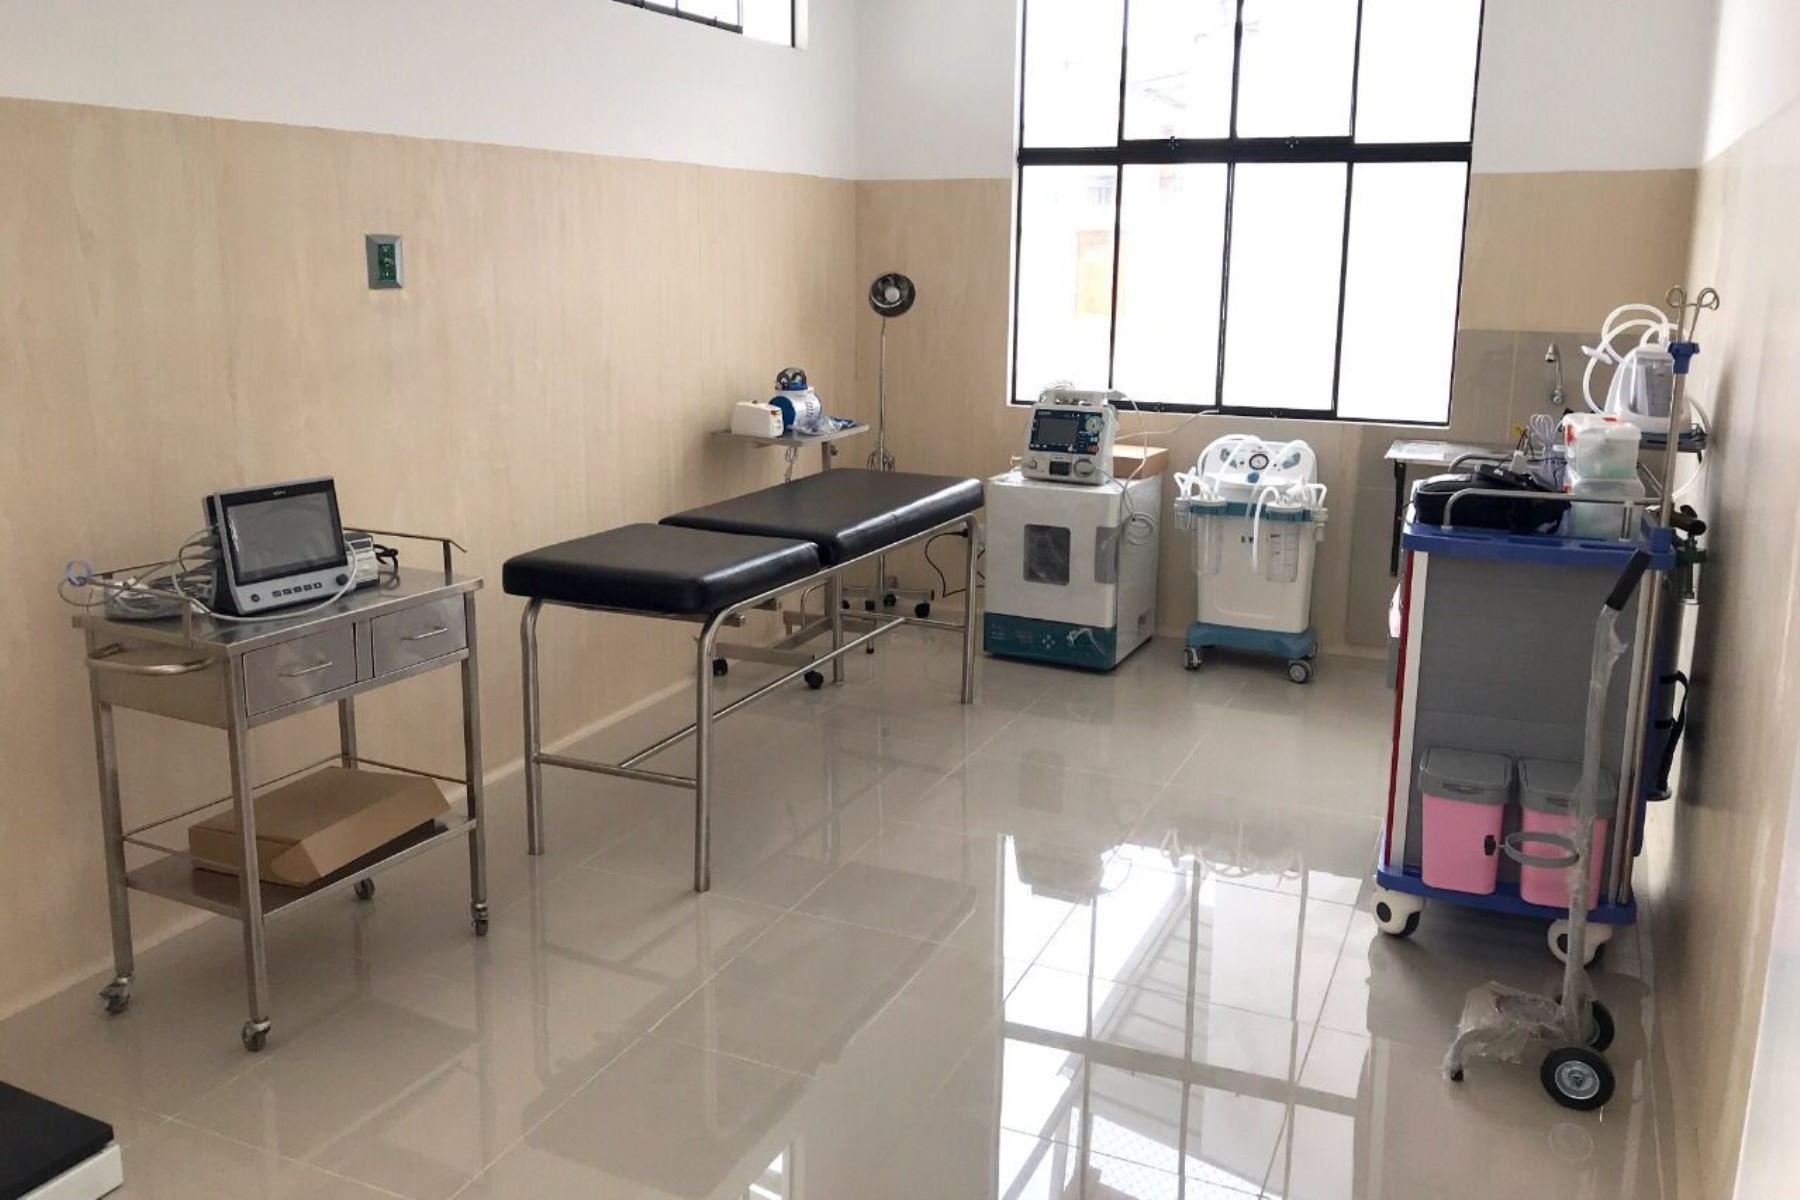 Cuarta ola: inauguran módulo covid-19 en centro de salud de Cerropón en Chiclayo